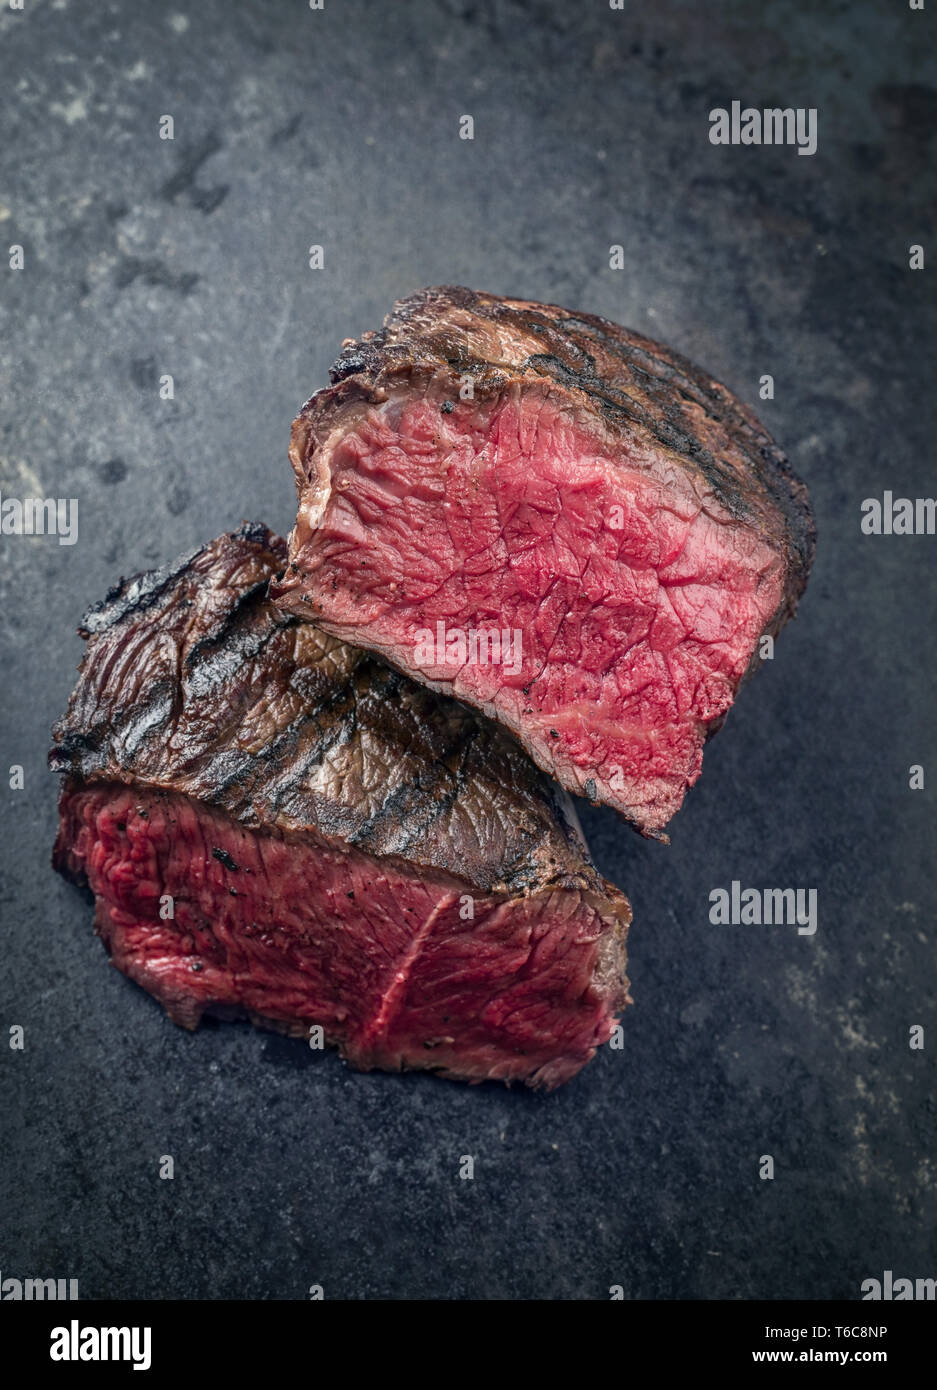 Wagyu Steak Barbecue Point très rares fabricants comme gros plan sur une ardoise Banque D'Images